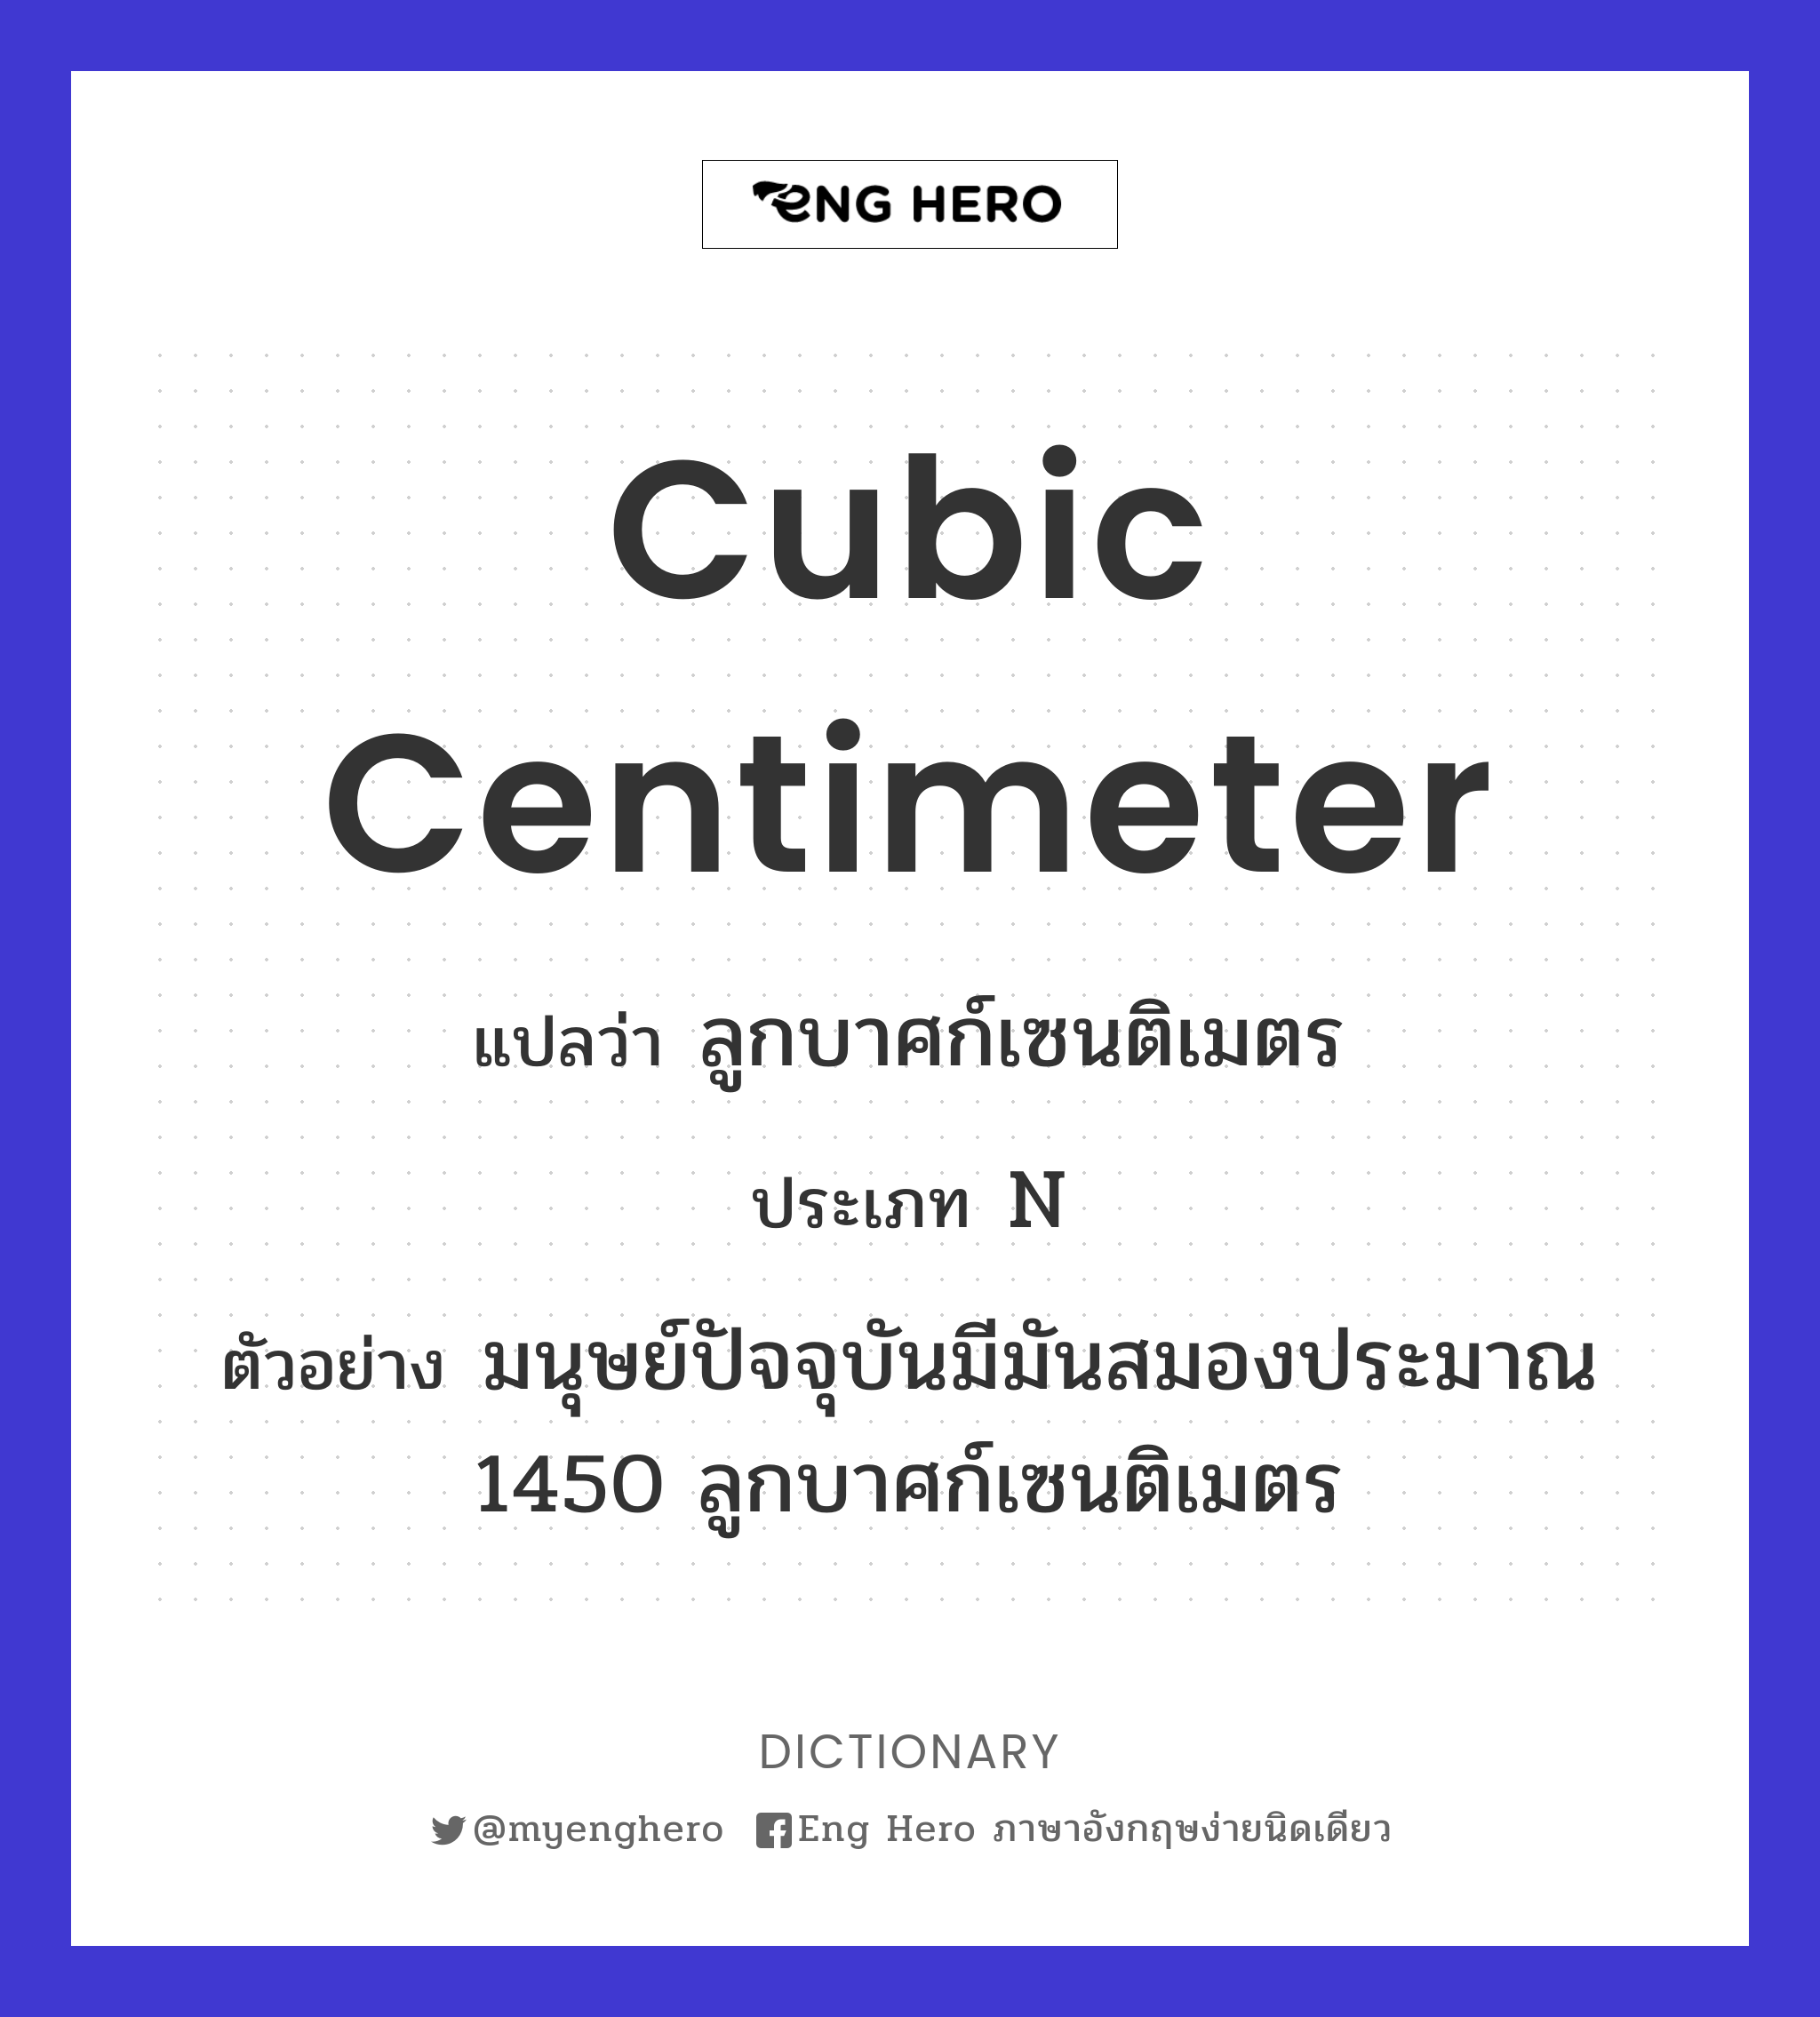 cubic centimeter